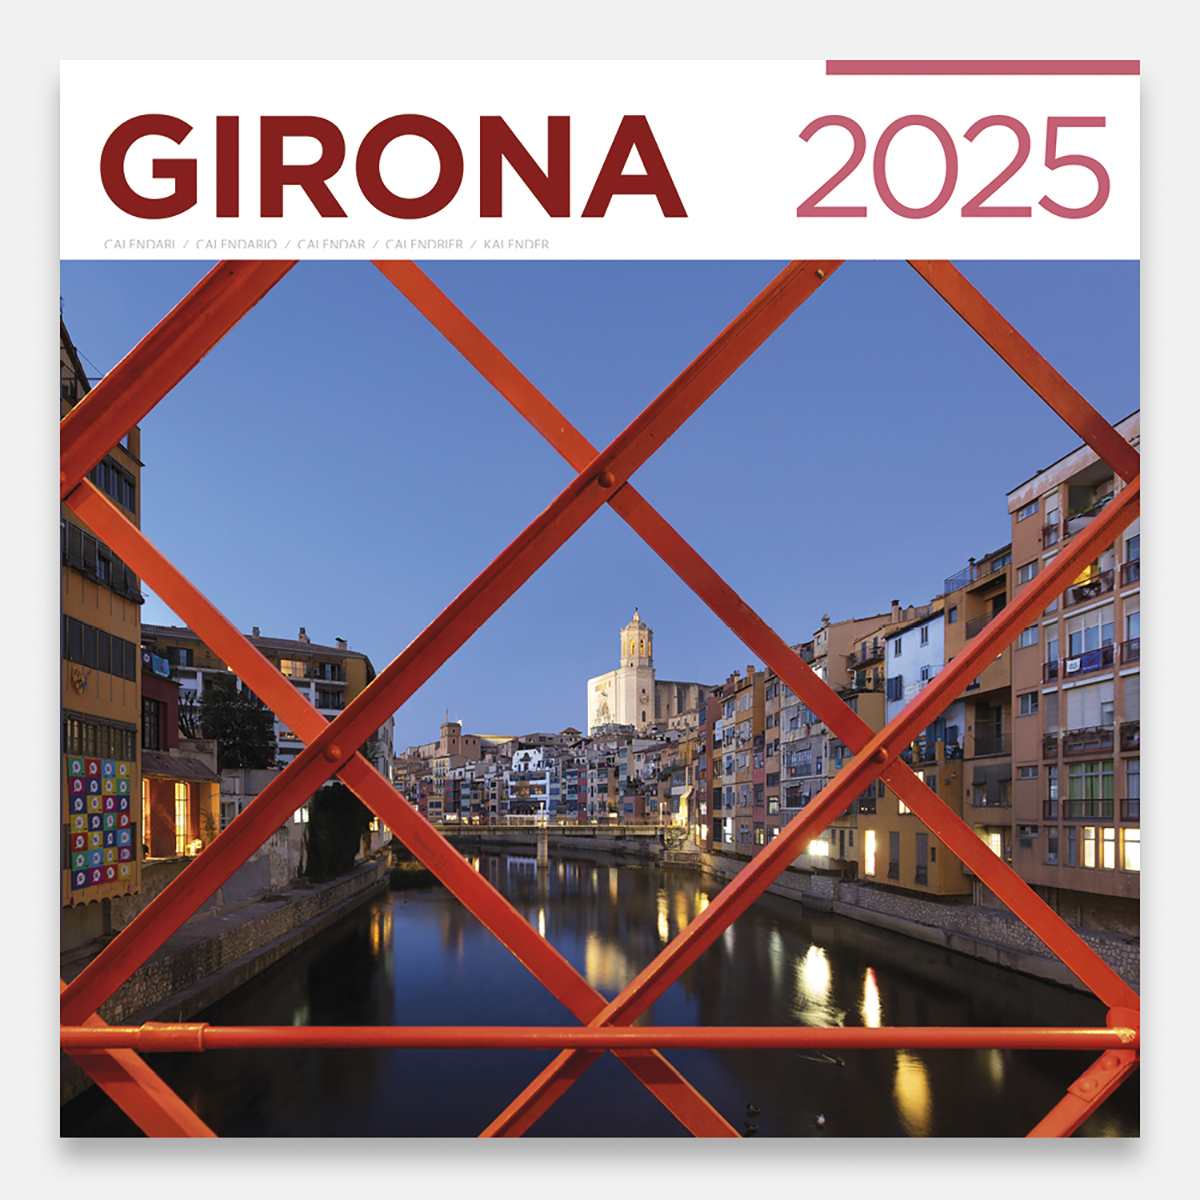 Calendario 2025 Girona 25gig calendario pared 2025 girona